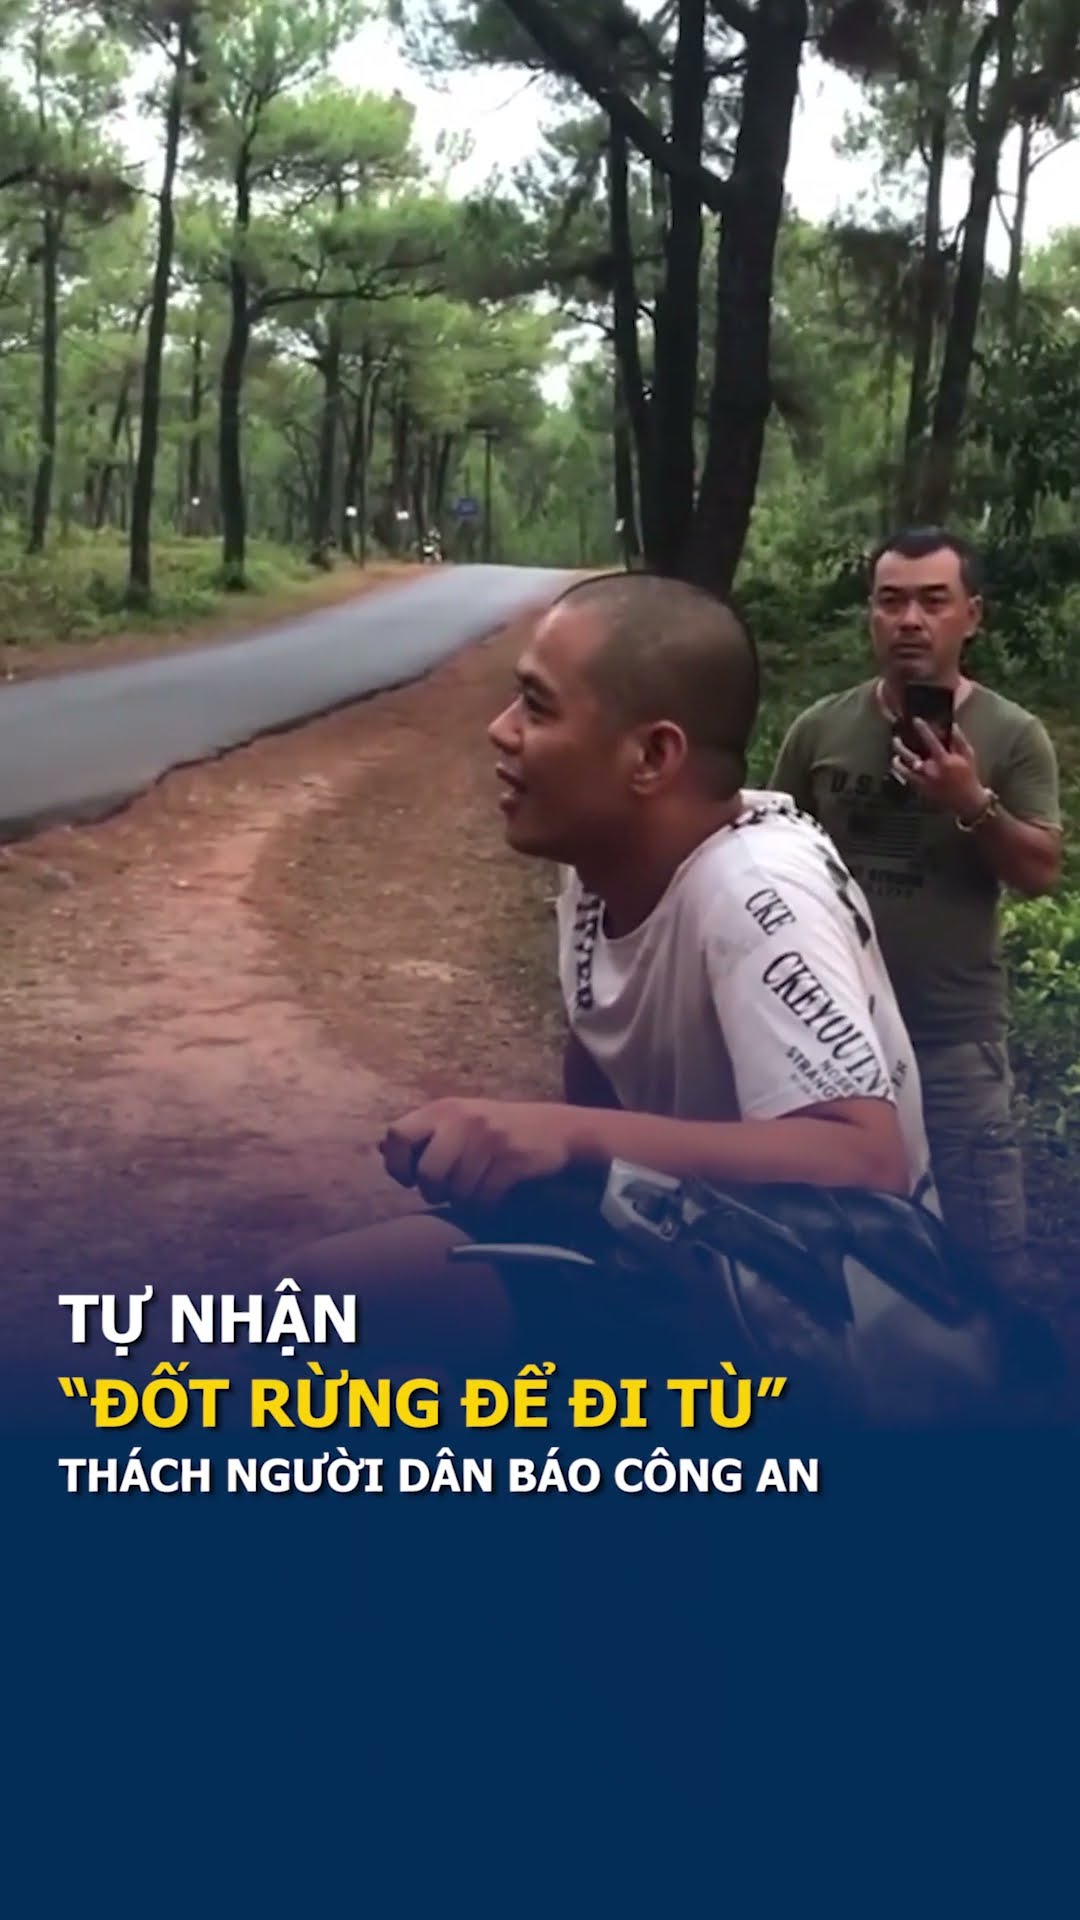 Nam thanh niên ở Huế tự nhận "đốt rừng để đi tù", thách người dân báo công an